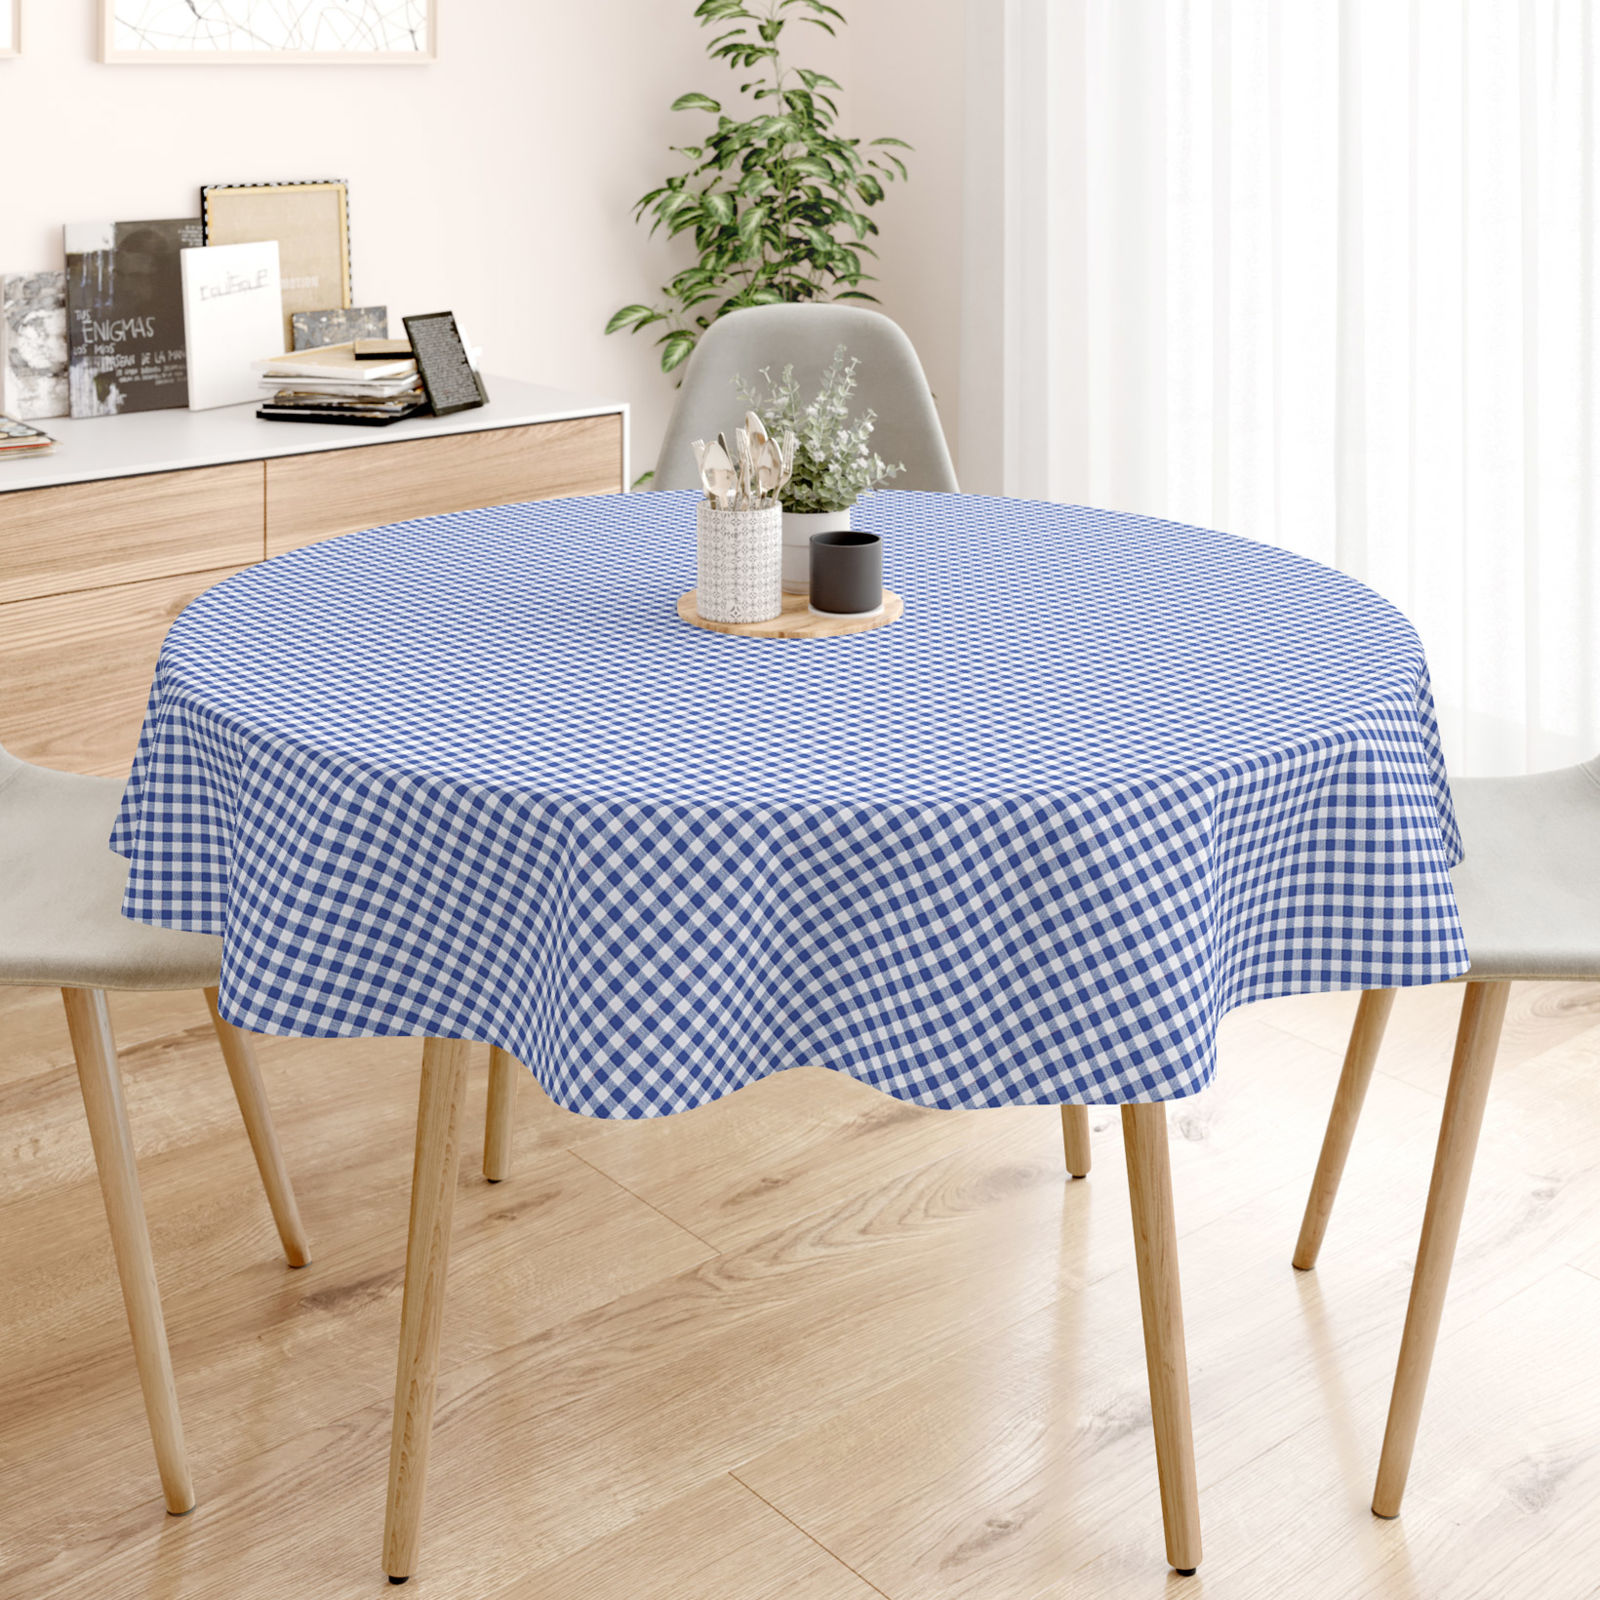 Pamut asztalterítő - kék - fehér kockás - kör alakú